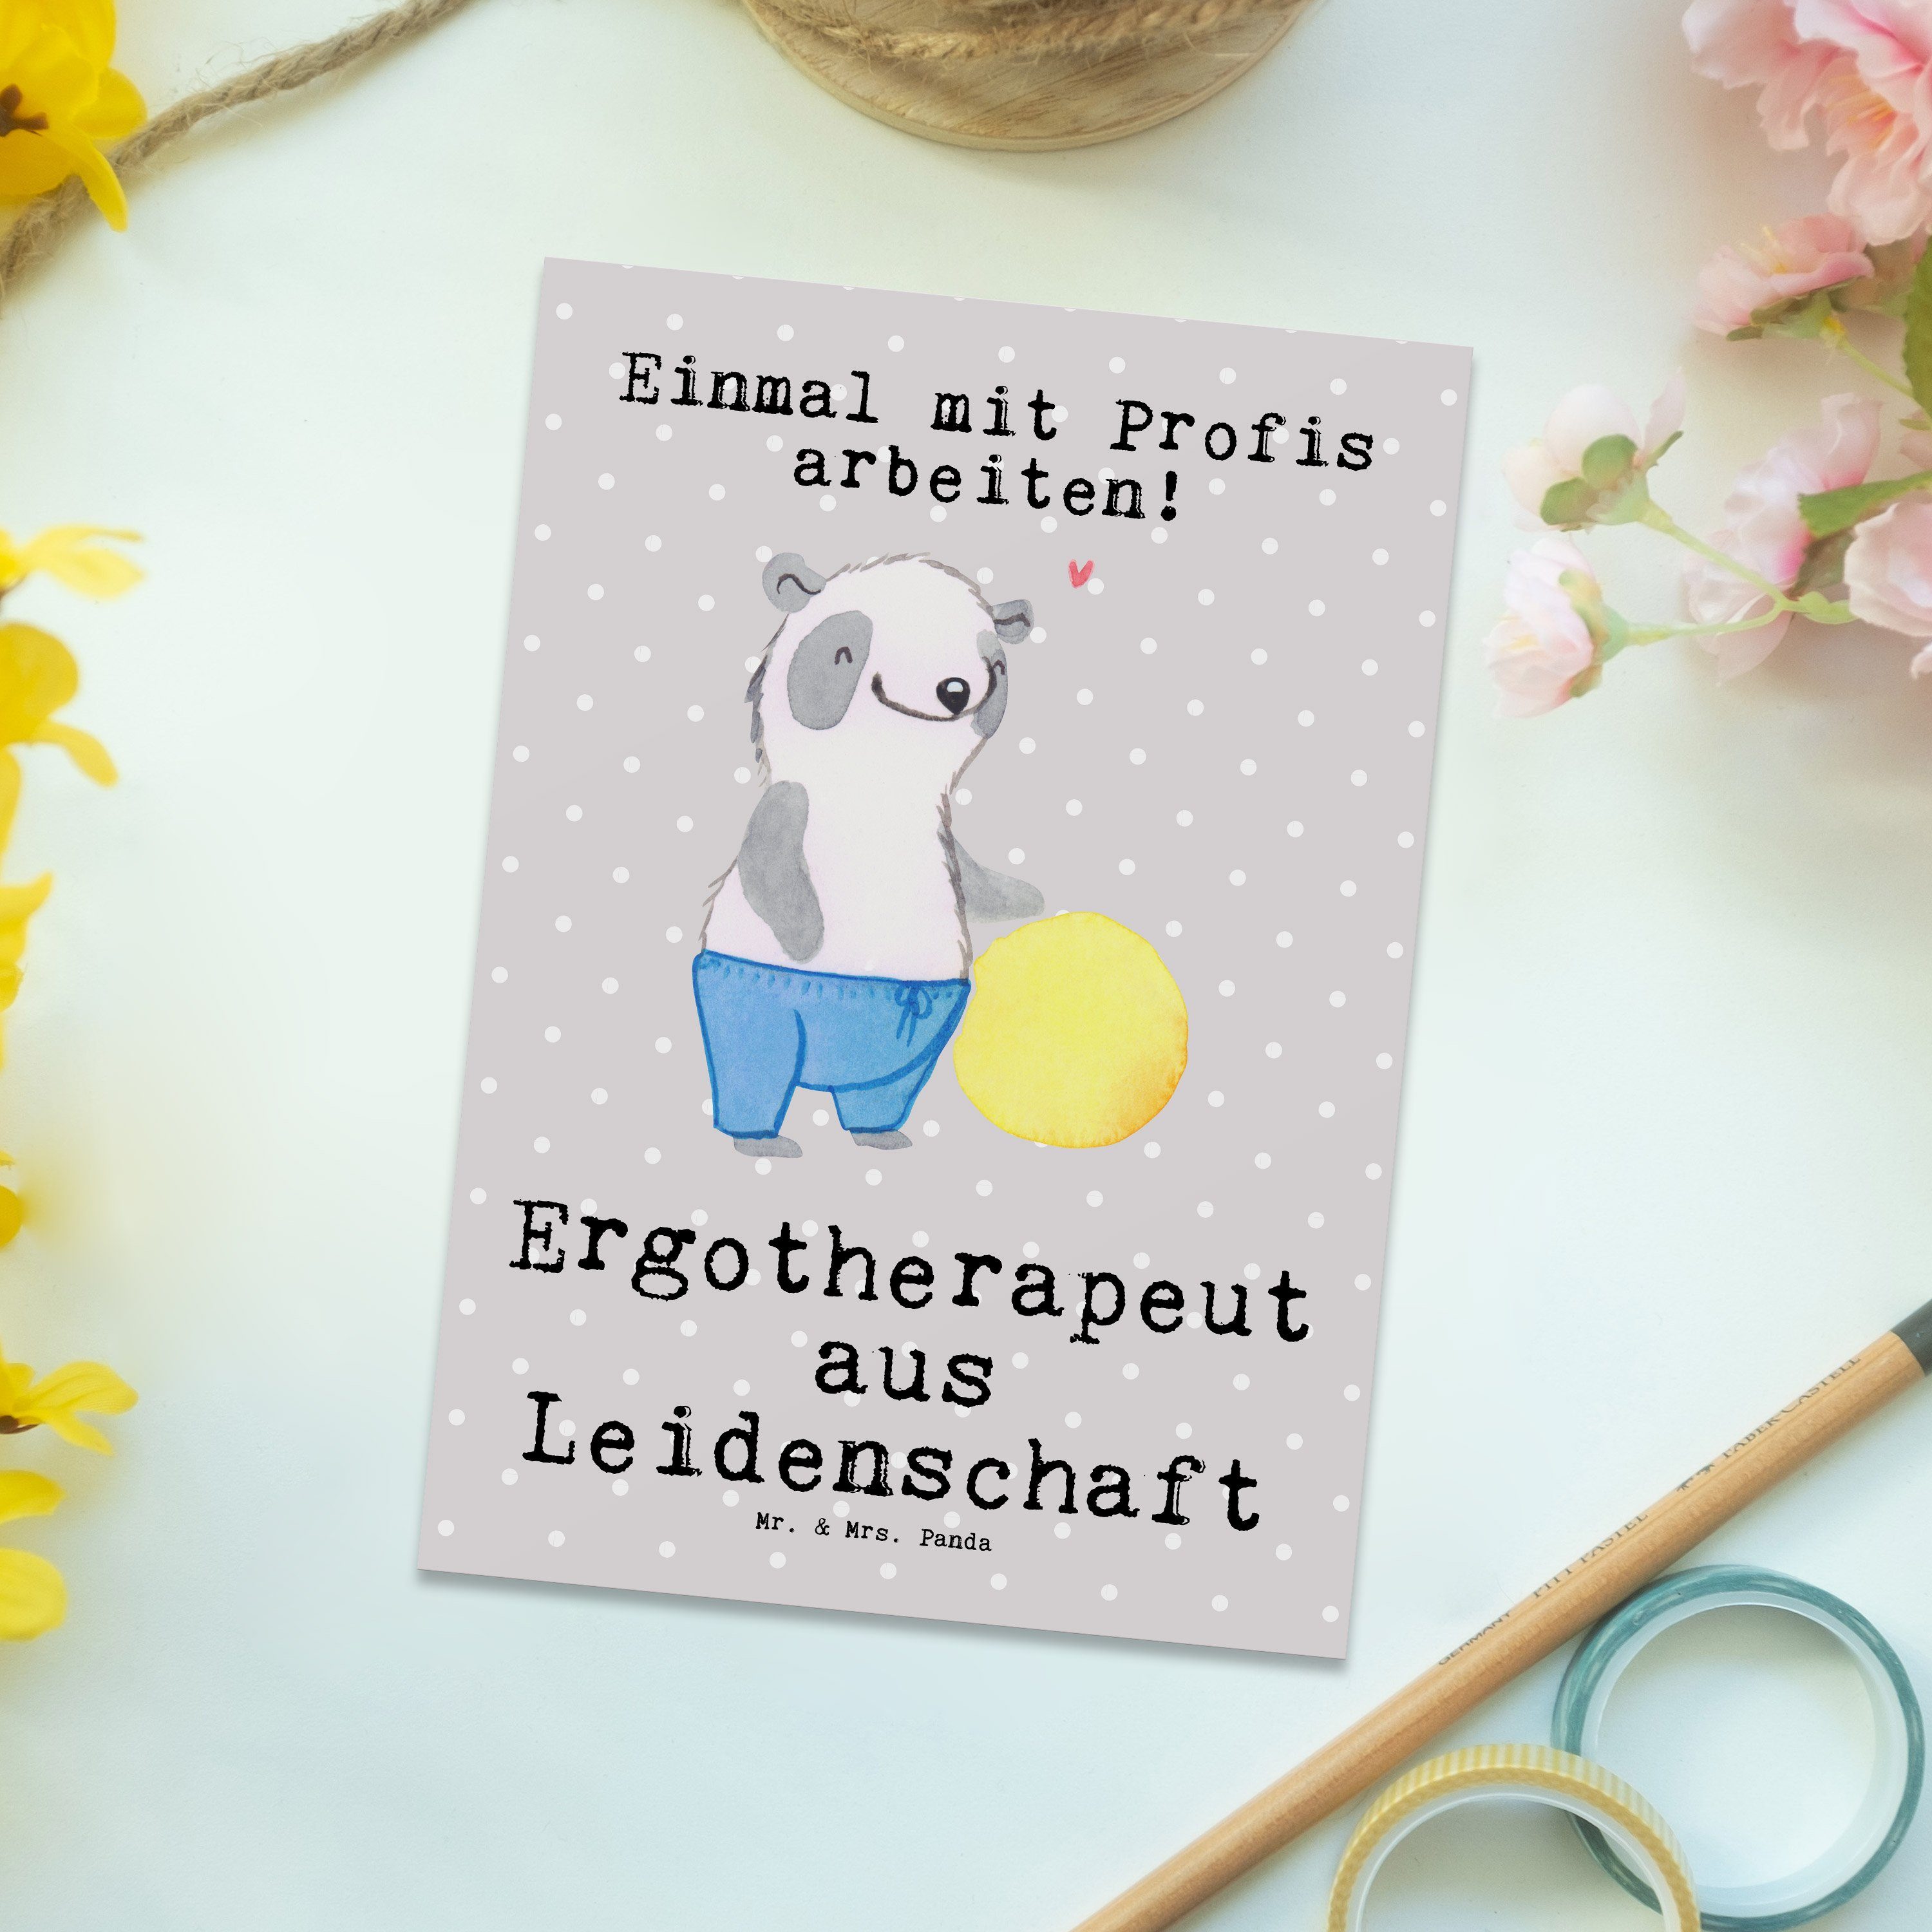 Grau Mr. Panda Ergotherapeut Jubiläum, - Mrs. aus Postkarte Geschenk, Pastell - & Leidenschaft A